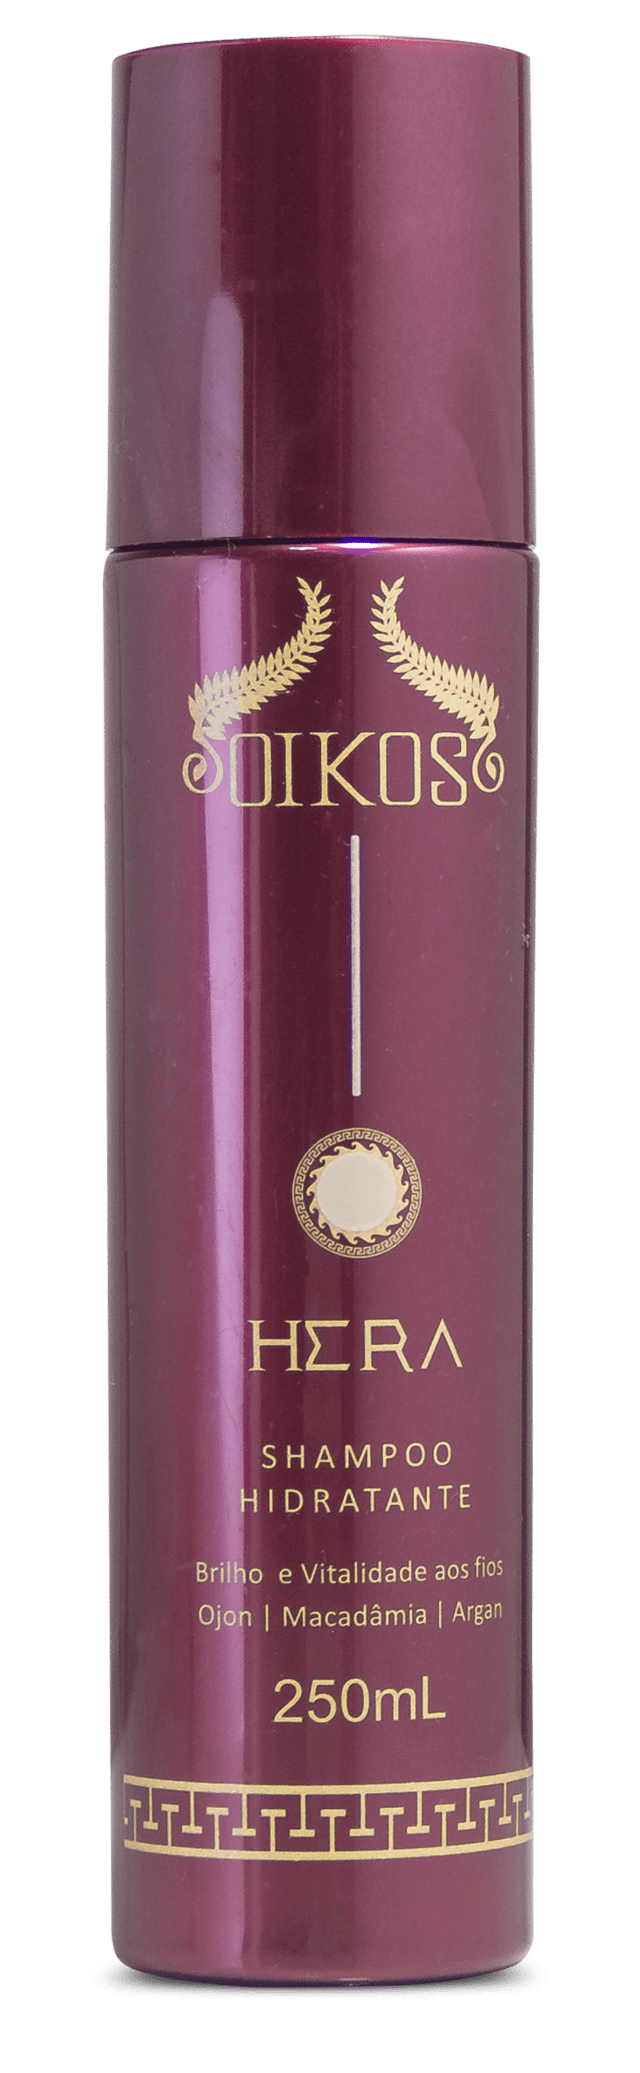 Shampoo Hera - 250ml - Comprar em OIKOS